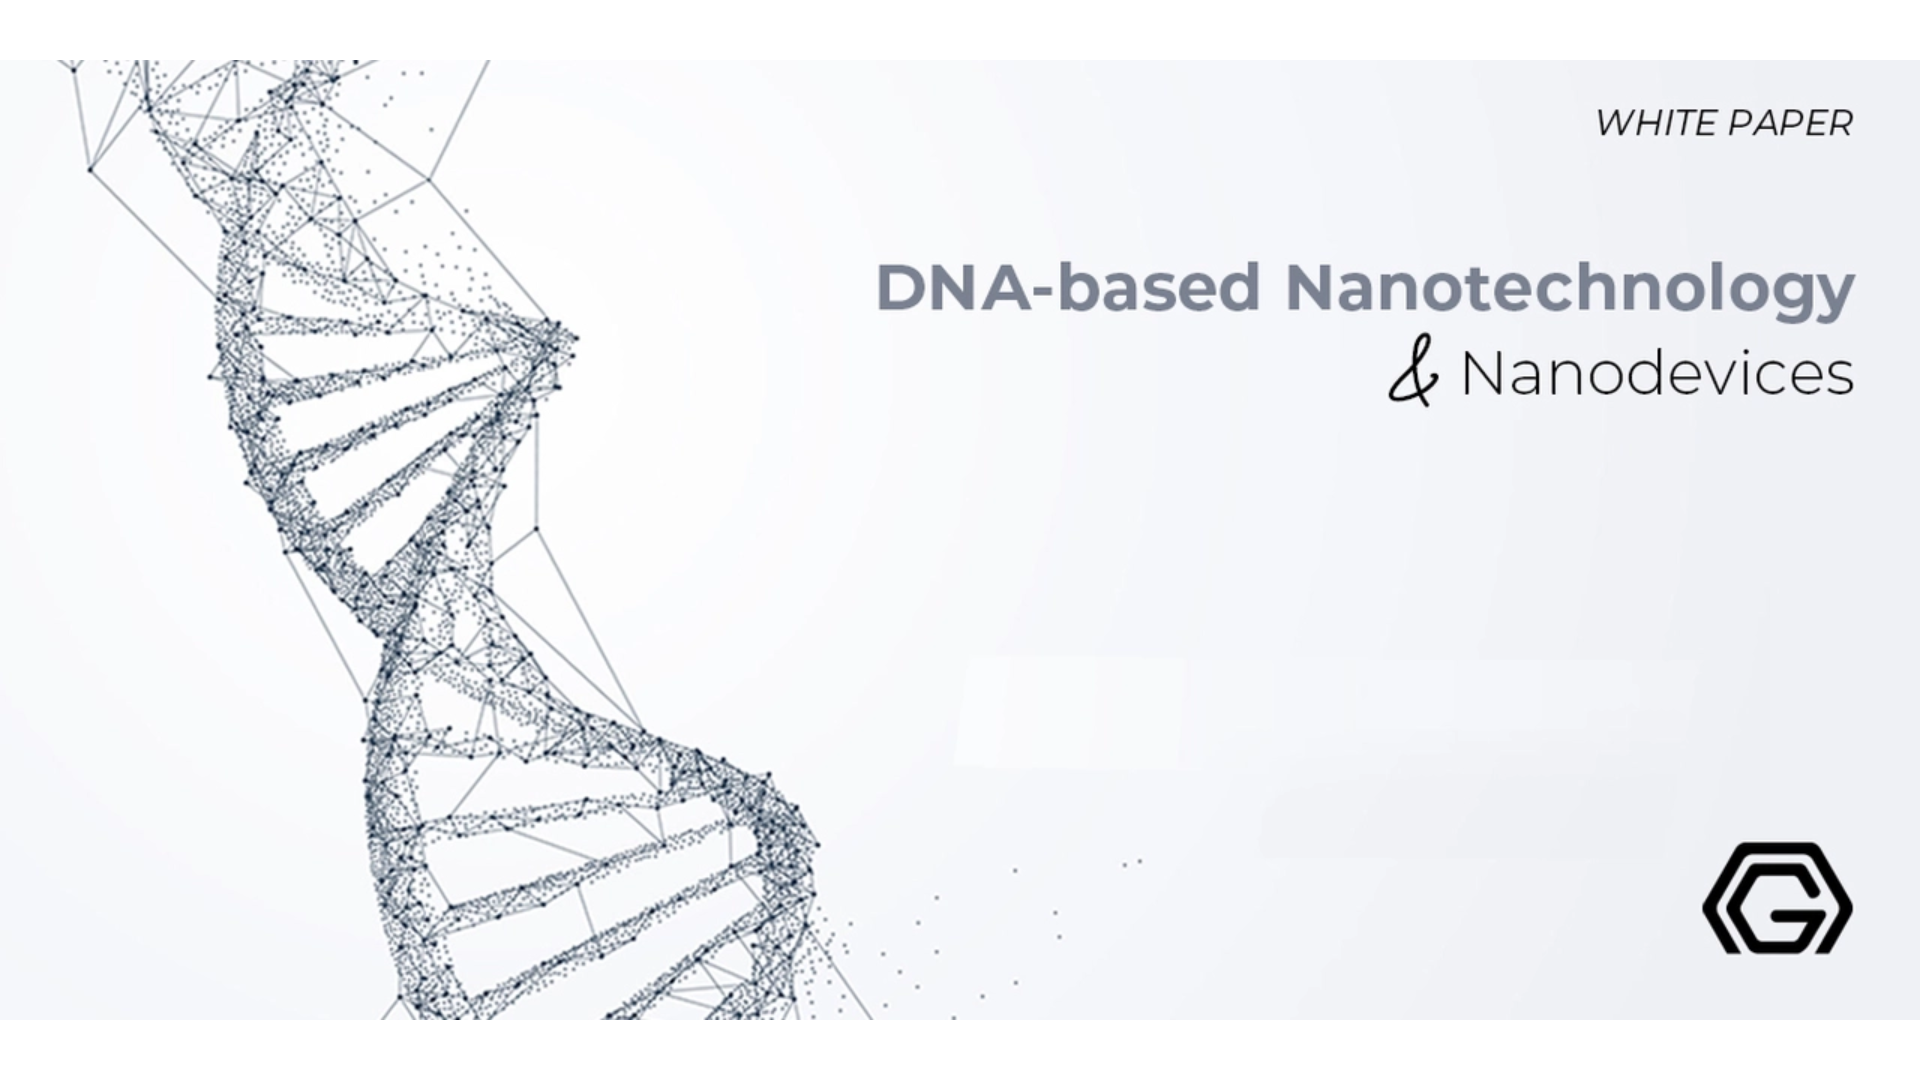 DNA-based nanotechnology & nanodevices